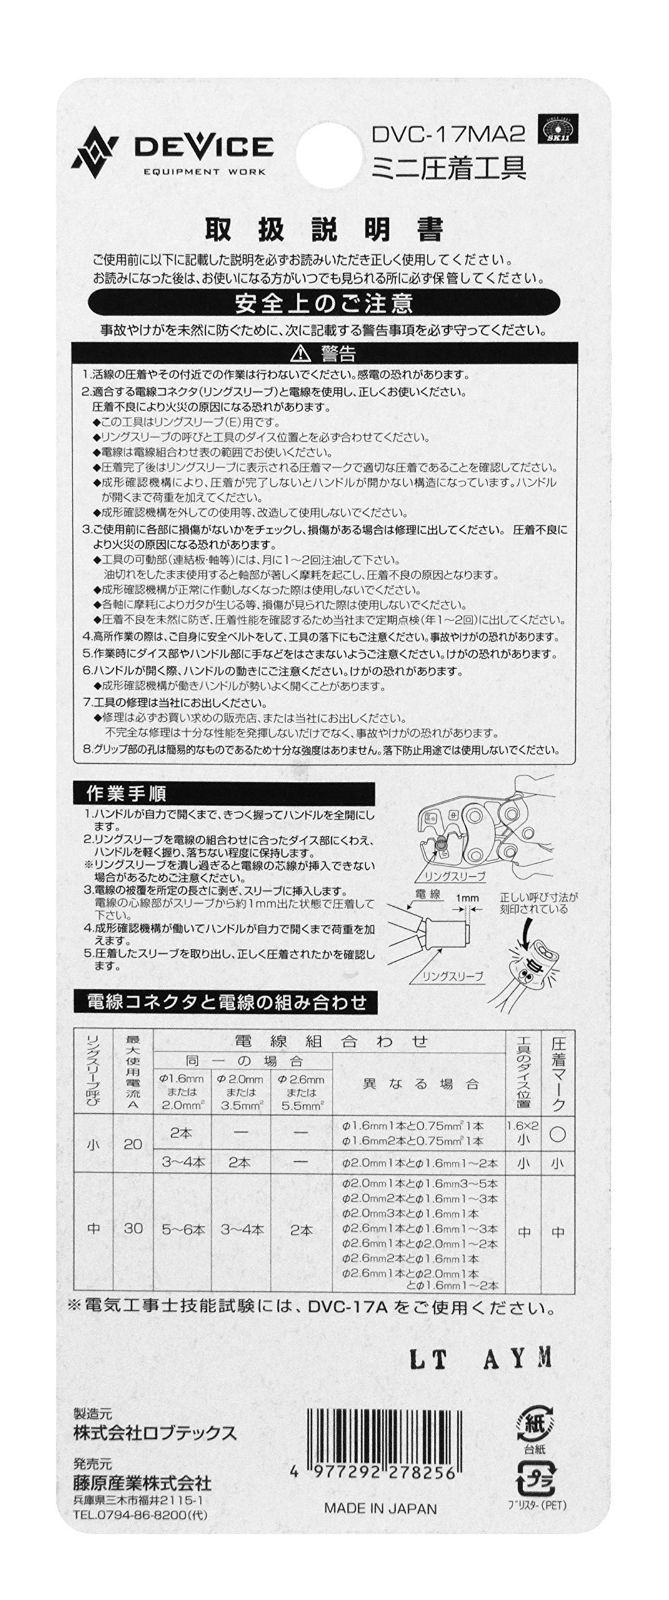 数量限定】リングスリーブE用 DVC-17MA2 日本製 ミニ圧着工具 DEVICE